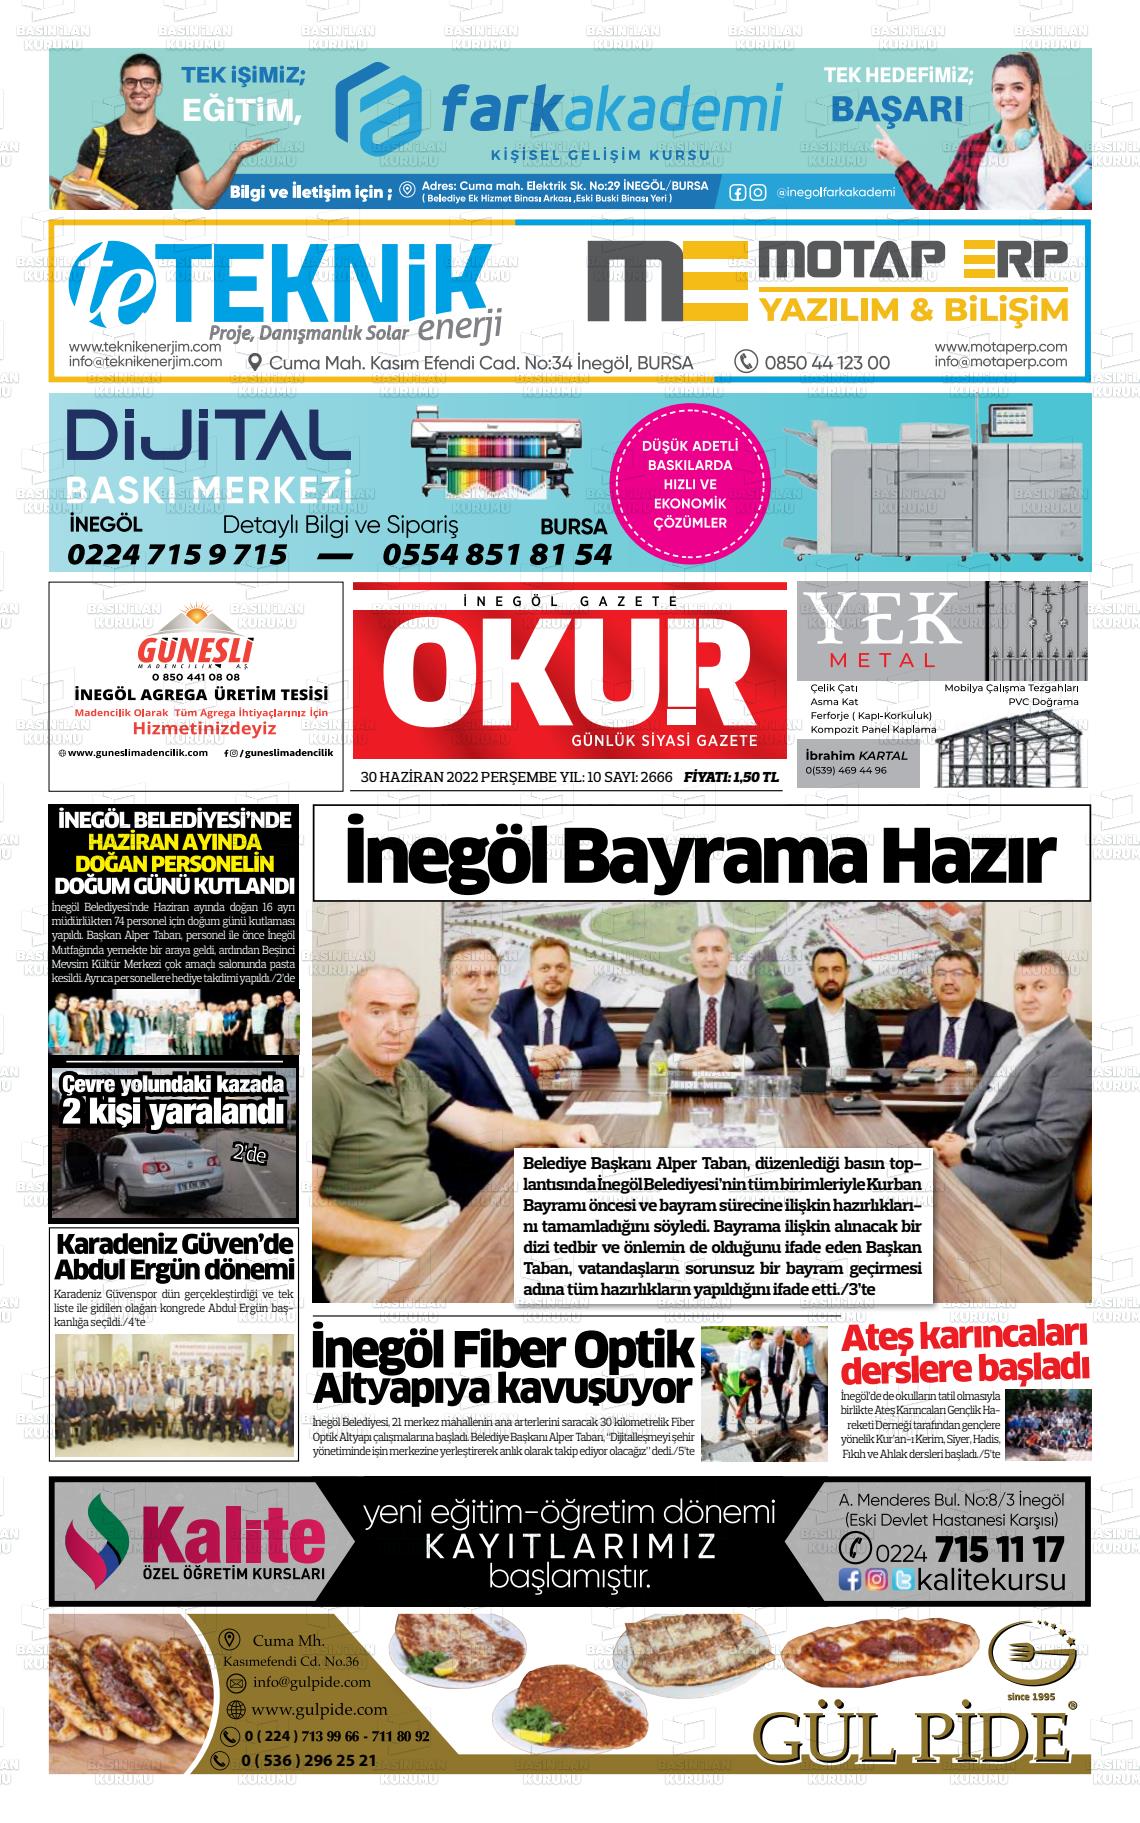 02 Temmuz 2022 İnegöl Okur Gazete Manşeti